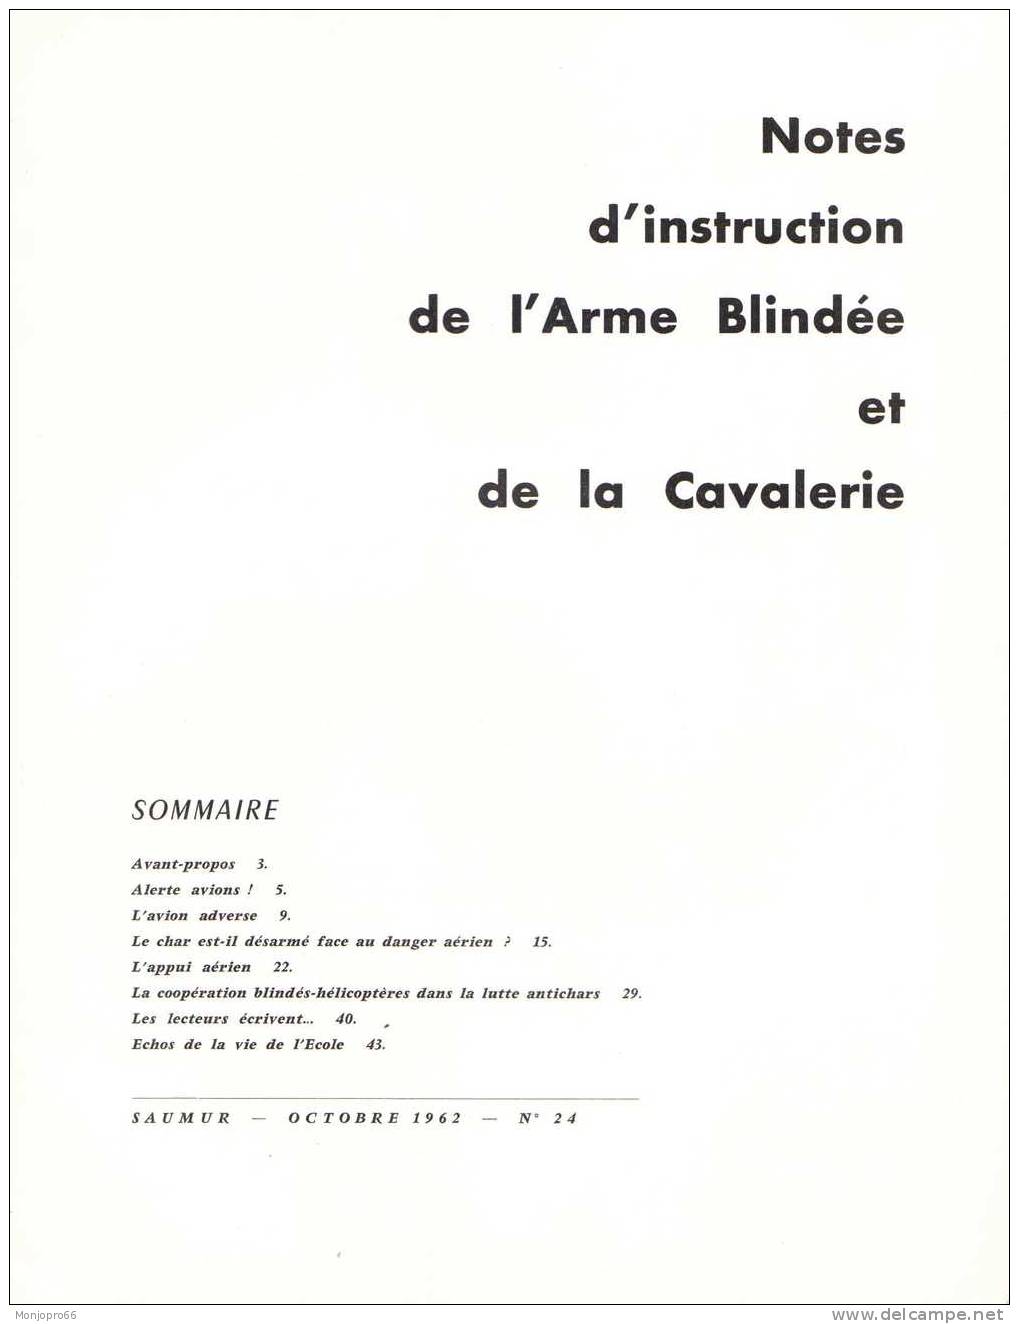 Bulletin De Notes D’instruction De L’armée Blindée Et De La Cavalerie N°24 D’Octobre 1962 - French